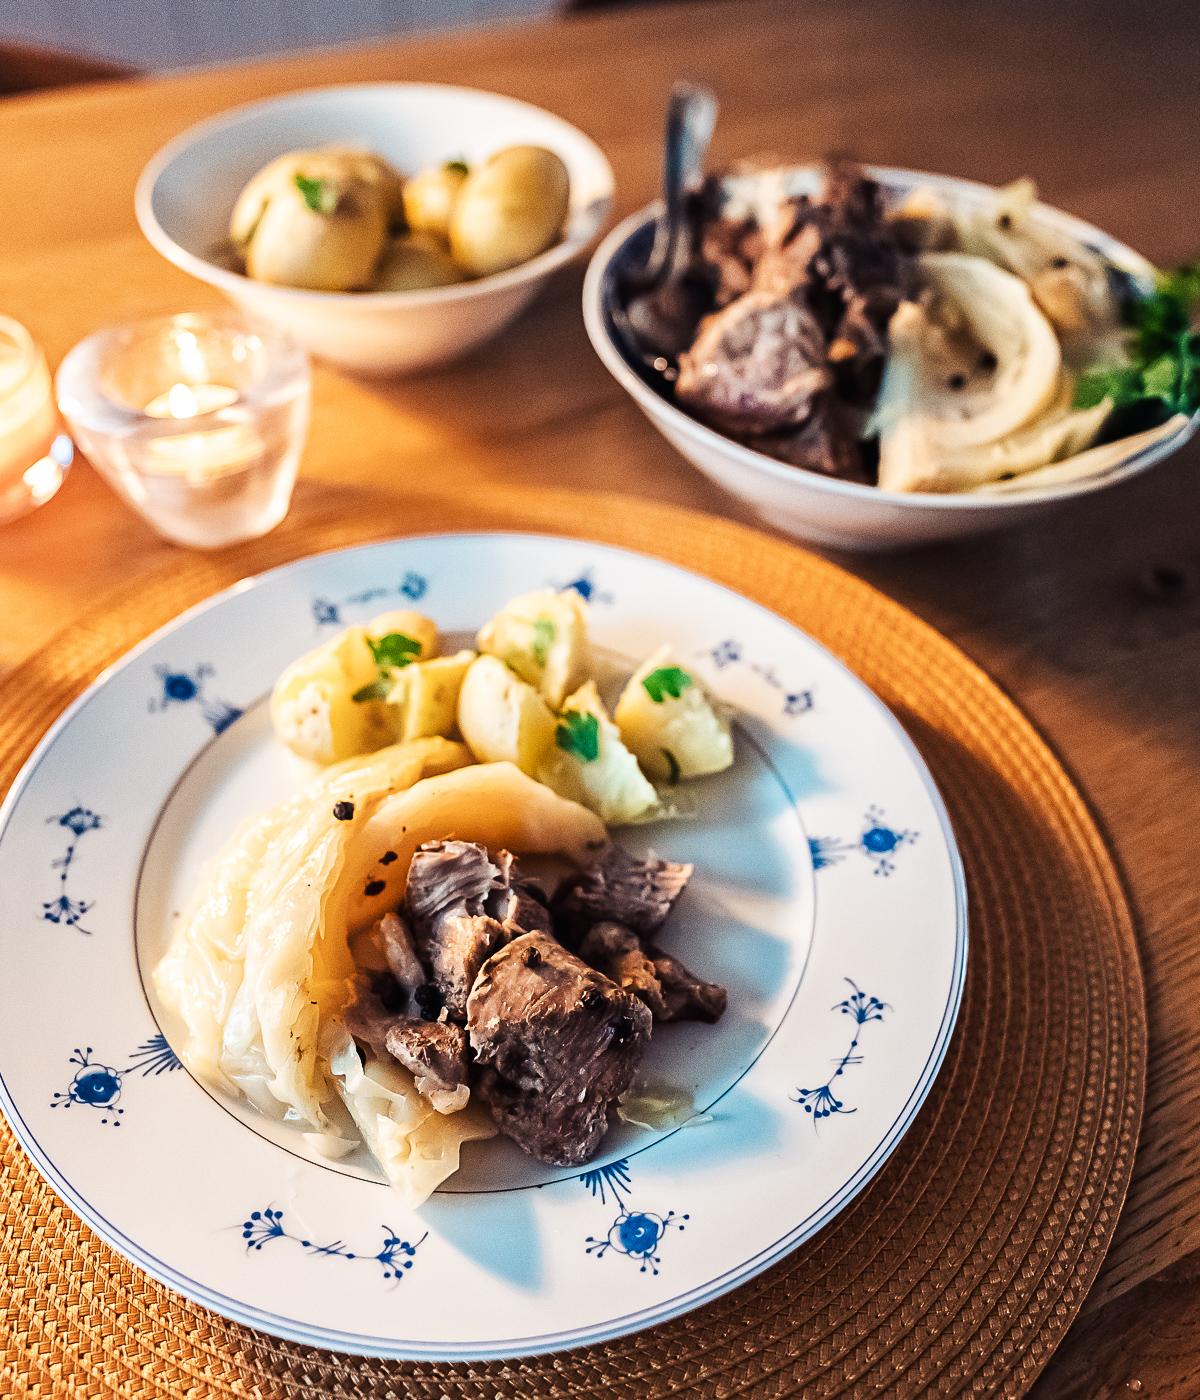 fårikål Norwegian lamb and cabbage stew